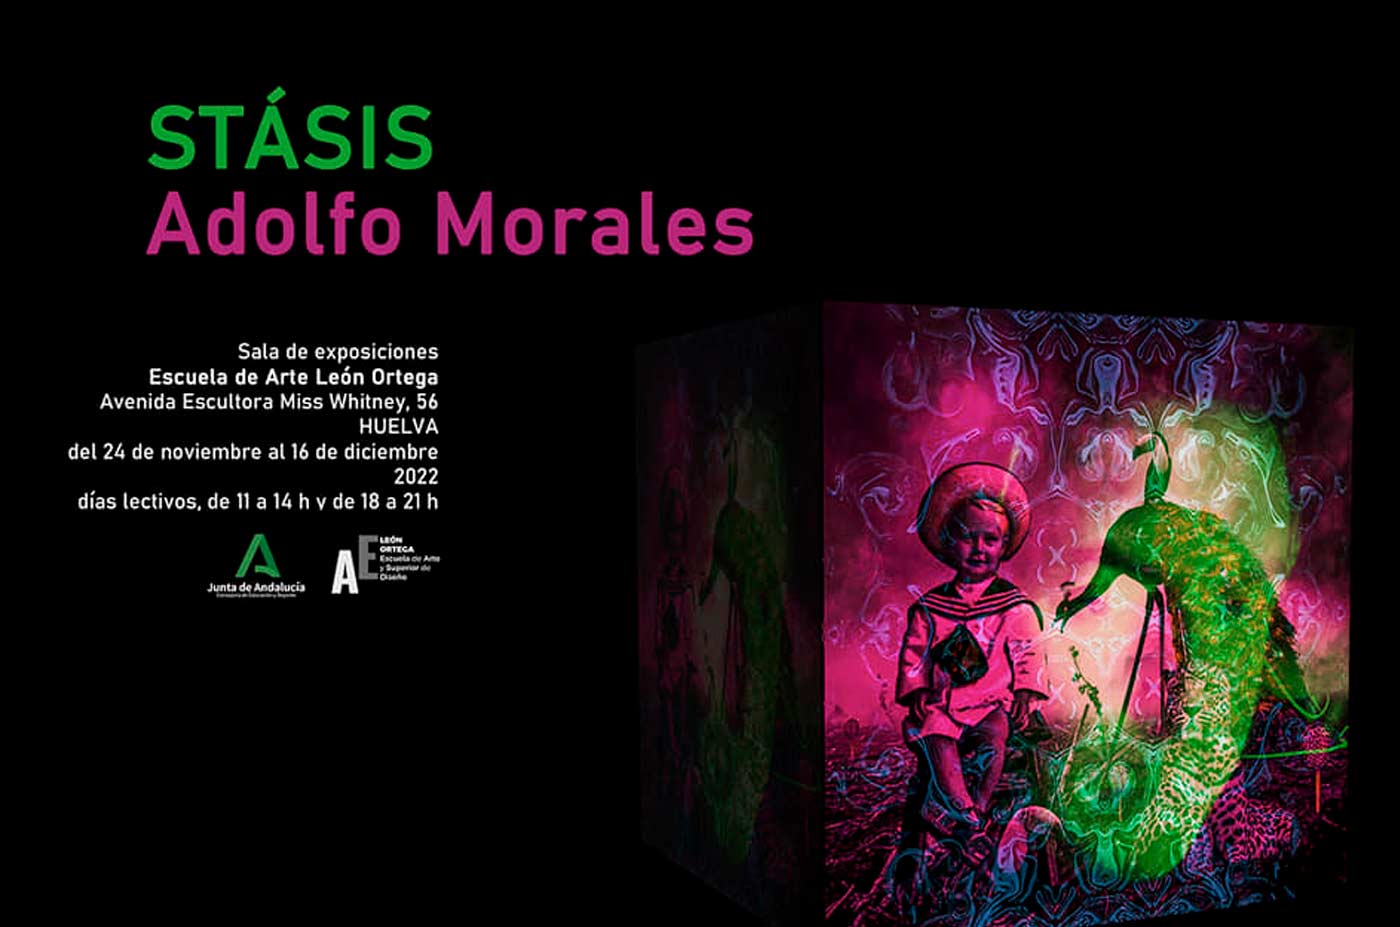 Stasis exposicion de Adolfo Morales Escuela de artes Leon Ortega